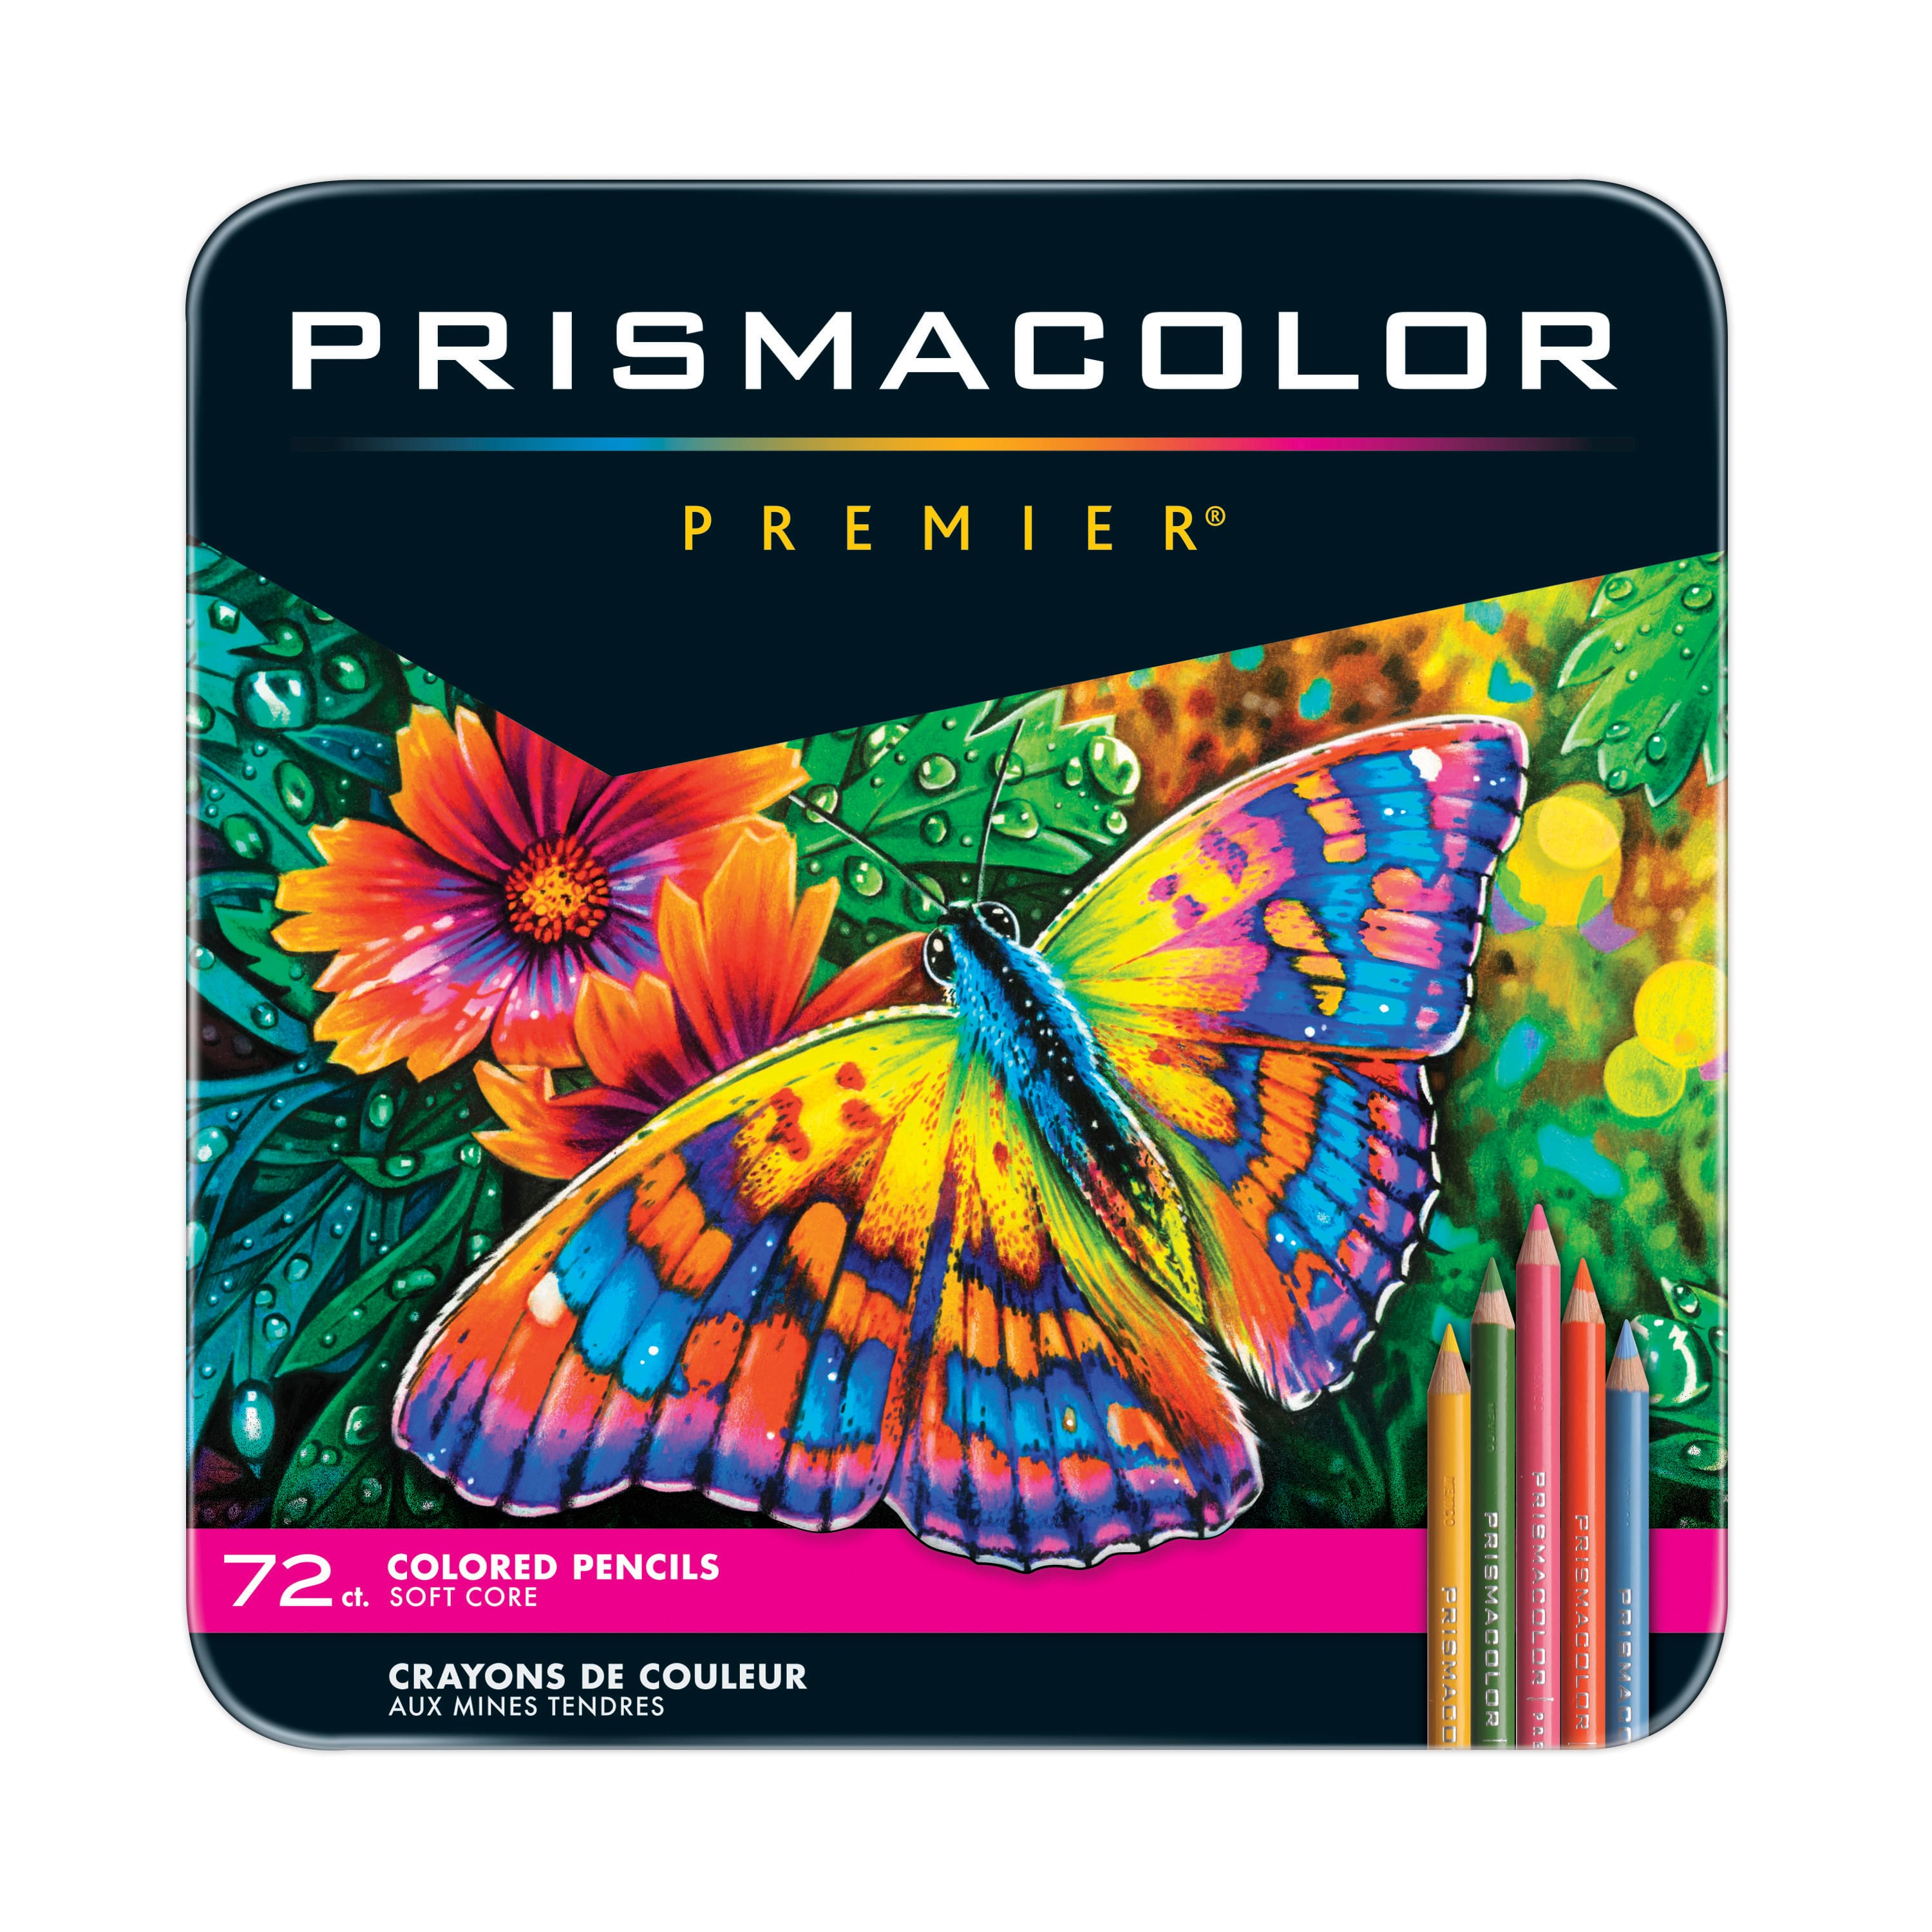 Prismacolor Premier 72ct Soft Core Colored Pencils BRAND NEW 